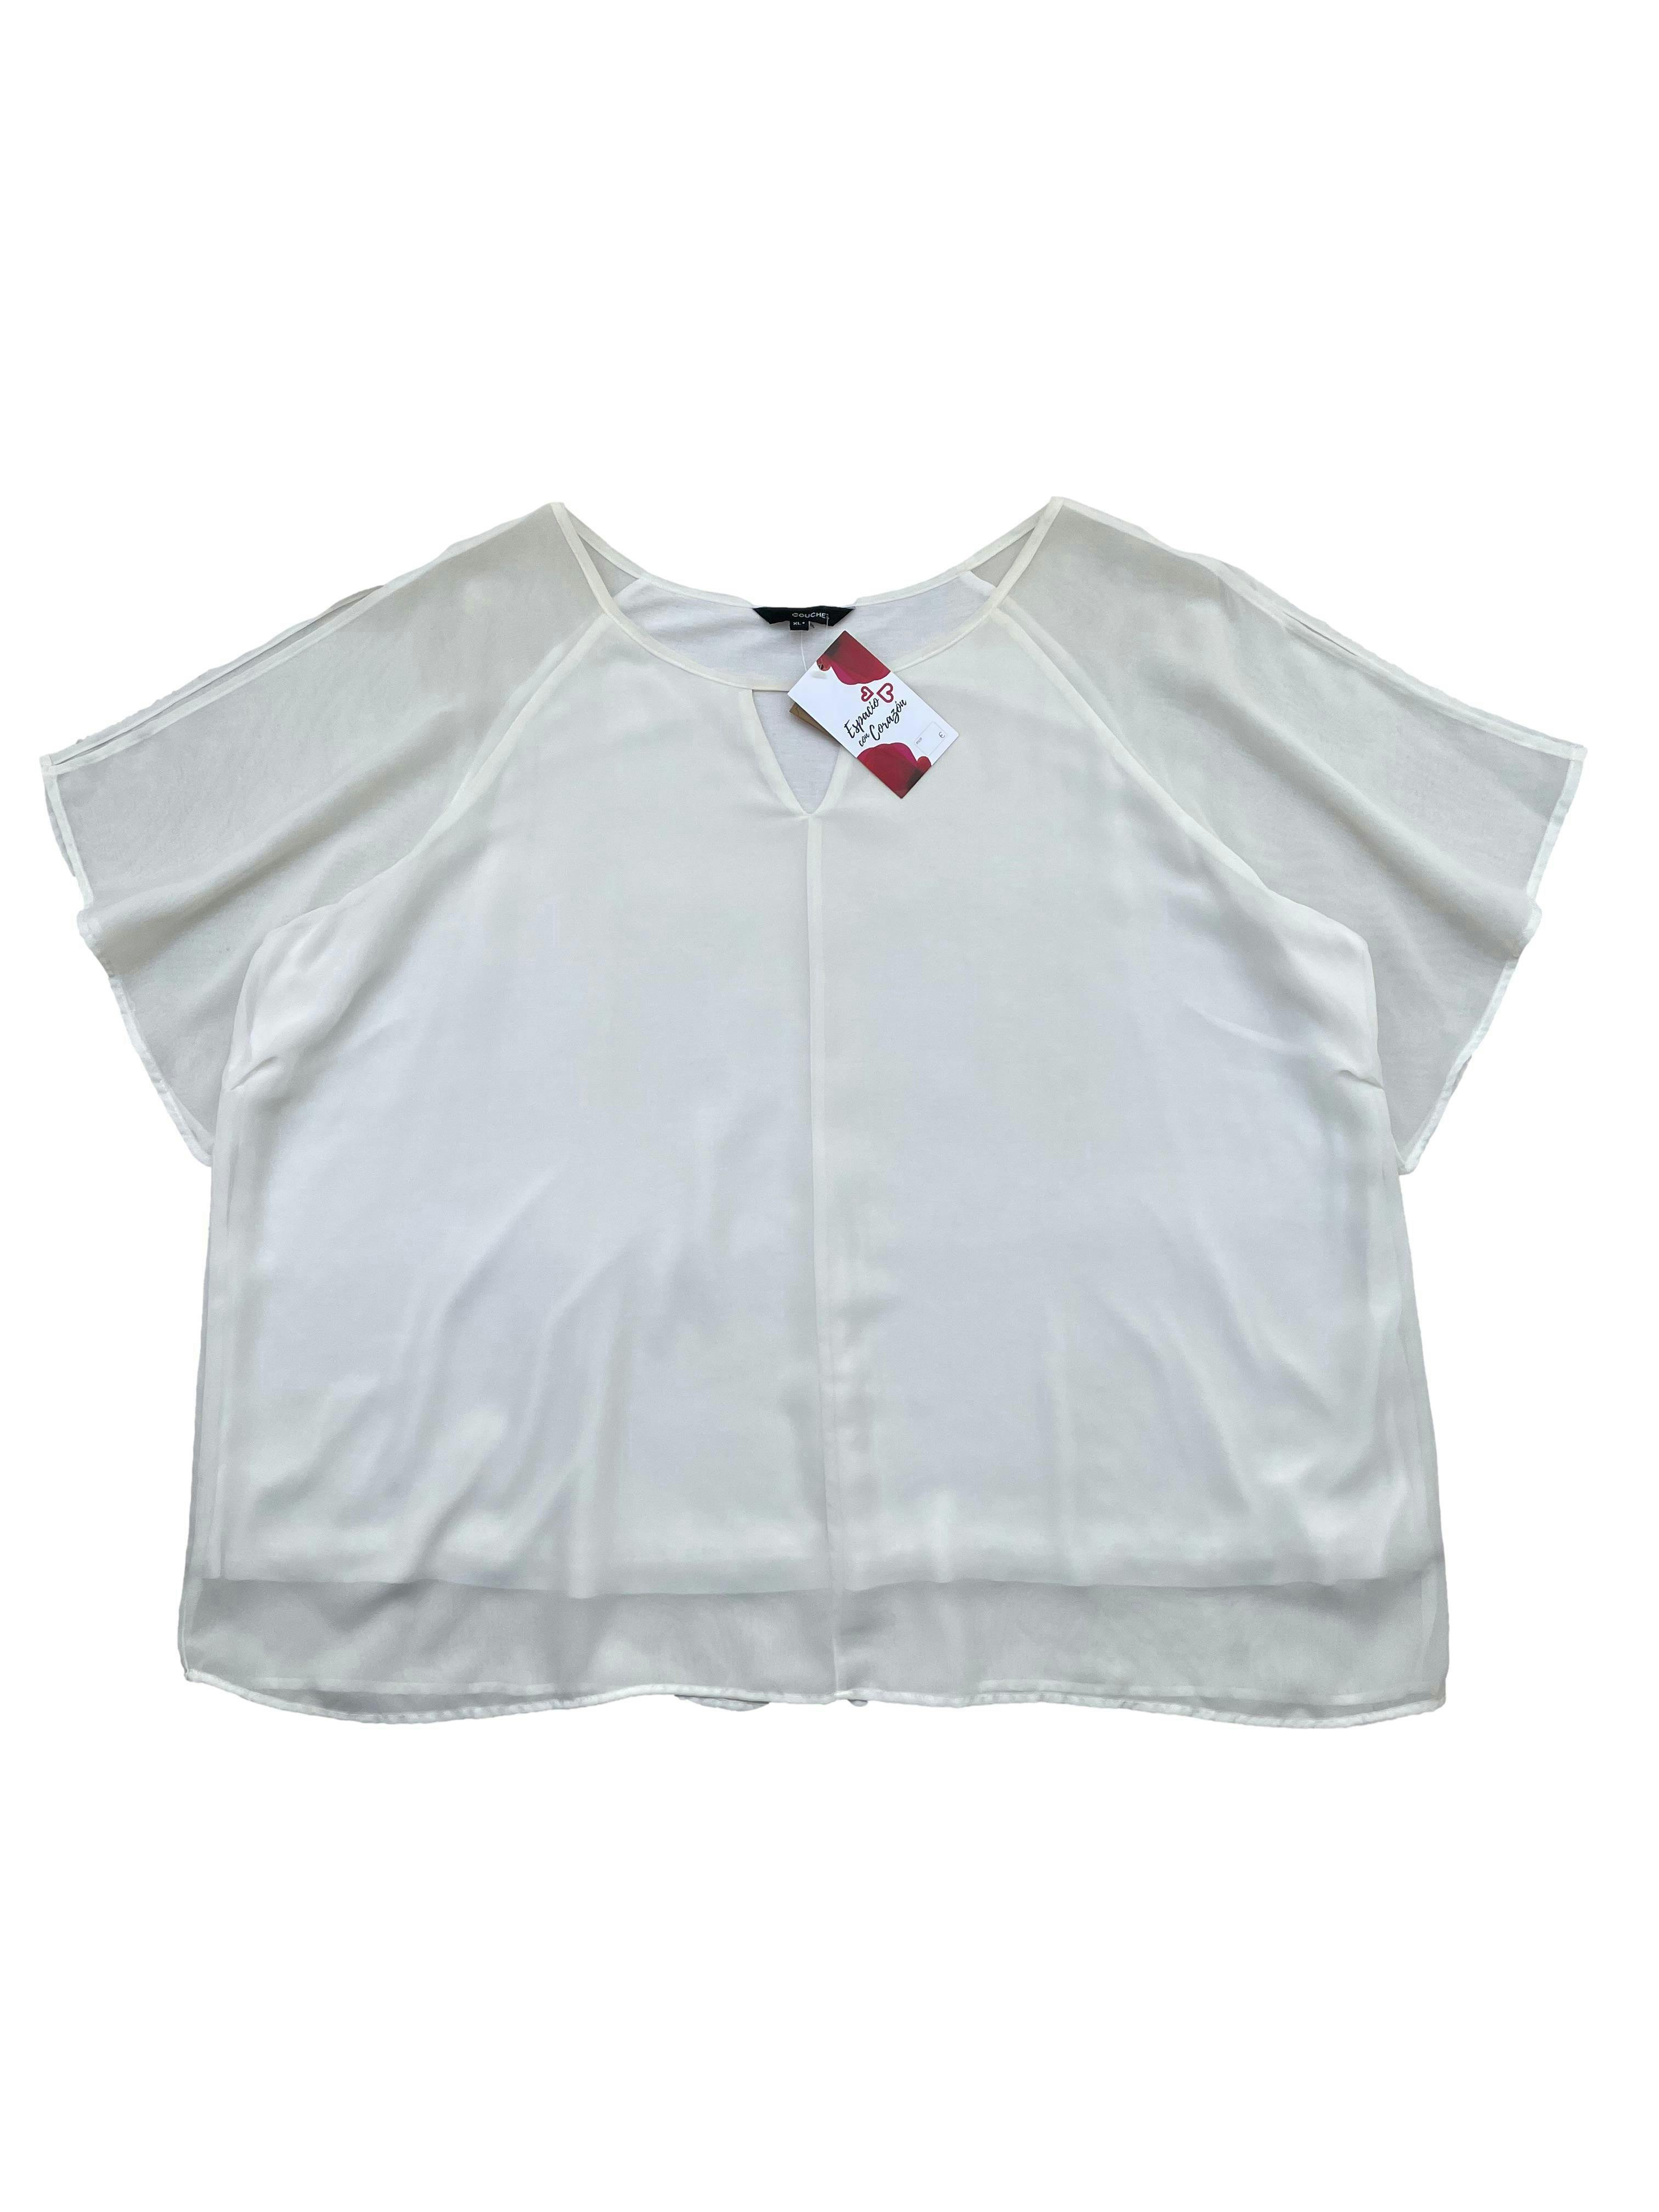 Blusa Couchel de gasa blanca con forro tipo algodón, abertura en mangas y escote delantero. Busto: 130cm, Largo: 68cm. Nueva con etiqueta